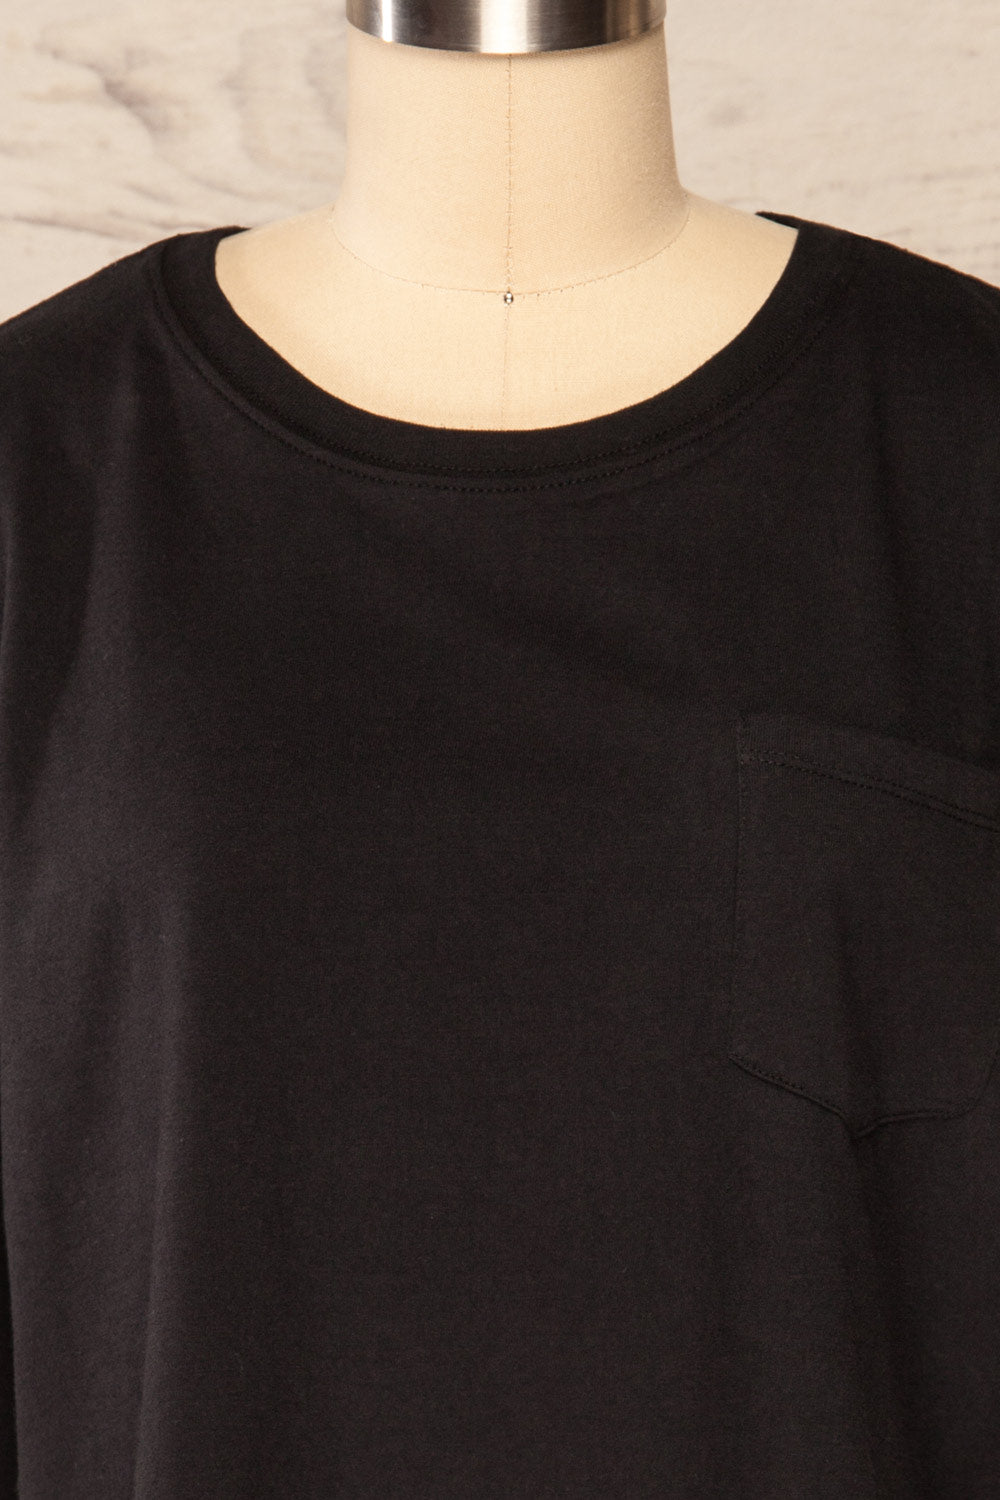 Bart Black Cropped Round Neck T-Shirt | La petite garçonne front close up